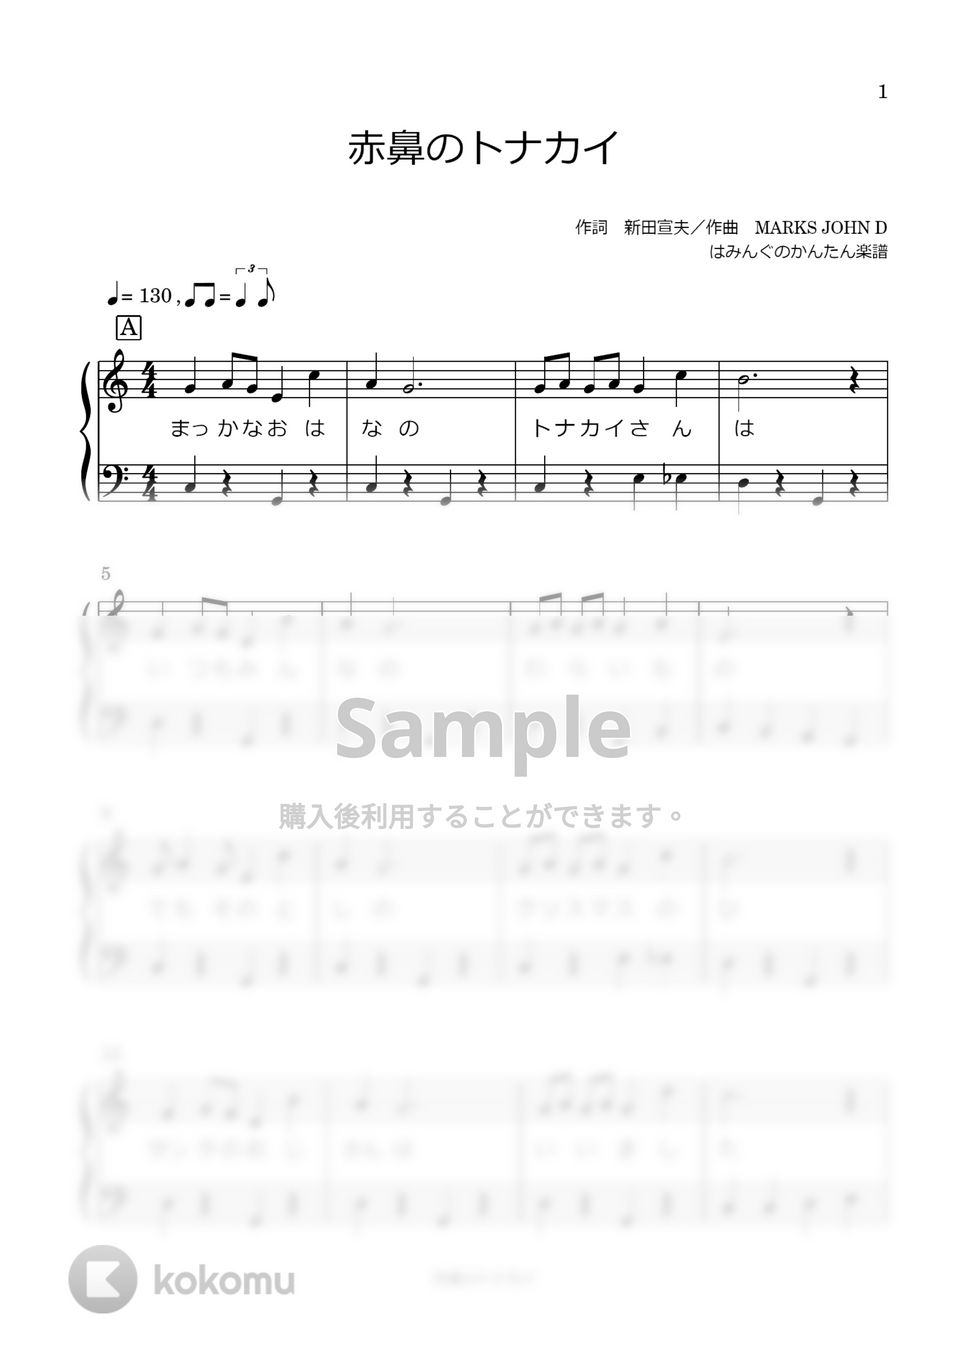 赤鼻のトナカイ (歌詞付き) by はみんぐのかんたん楽譜